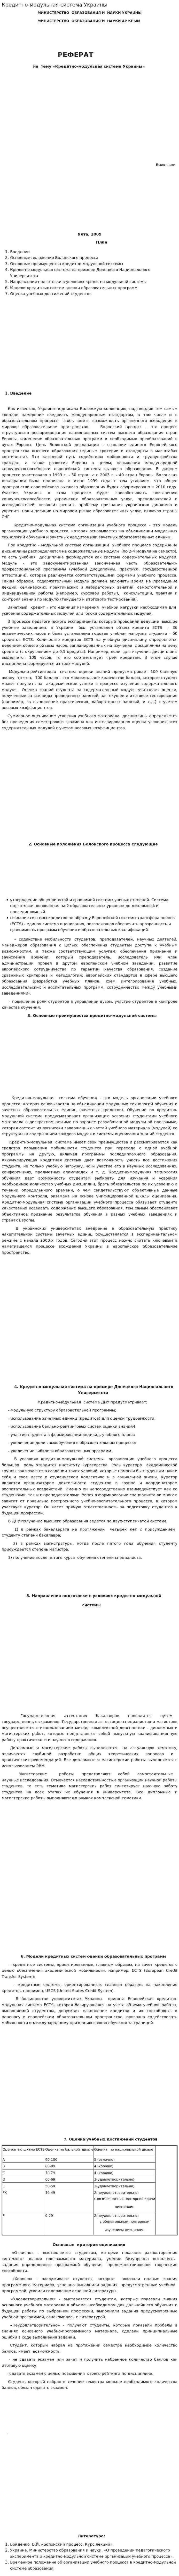 Кредитно-модульная система Украины